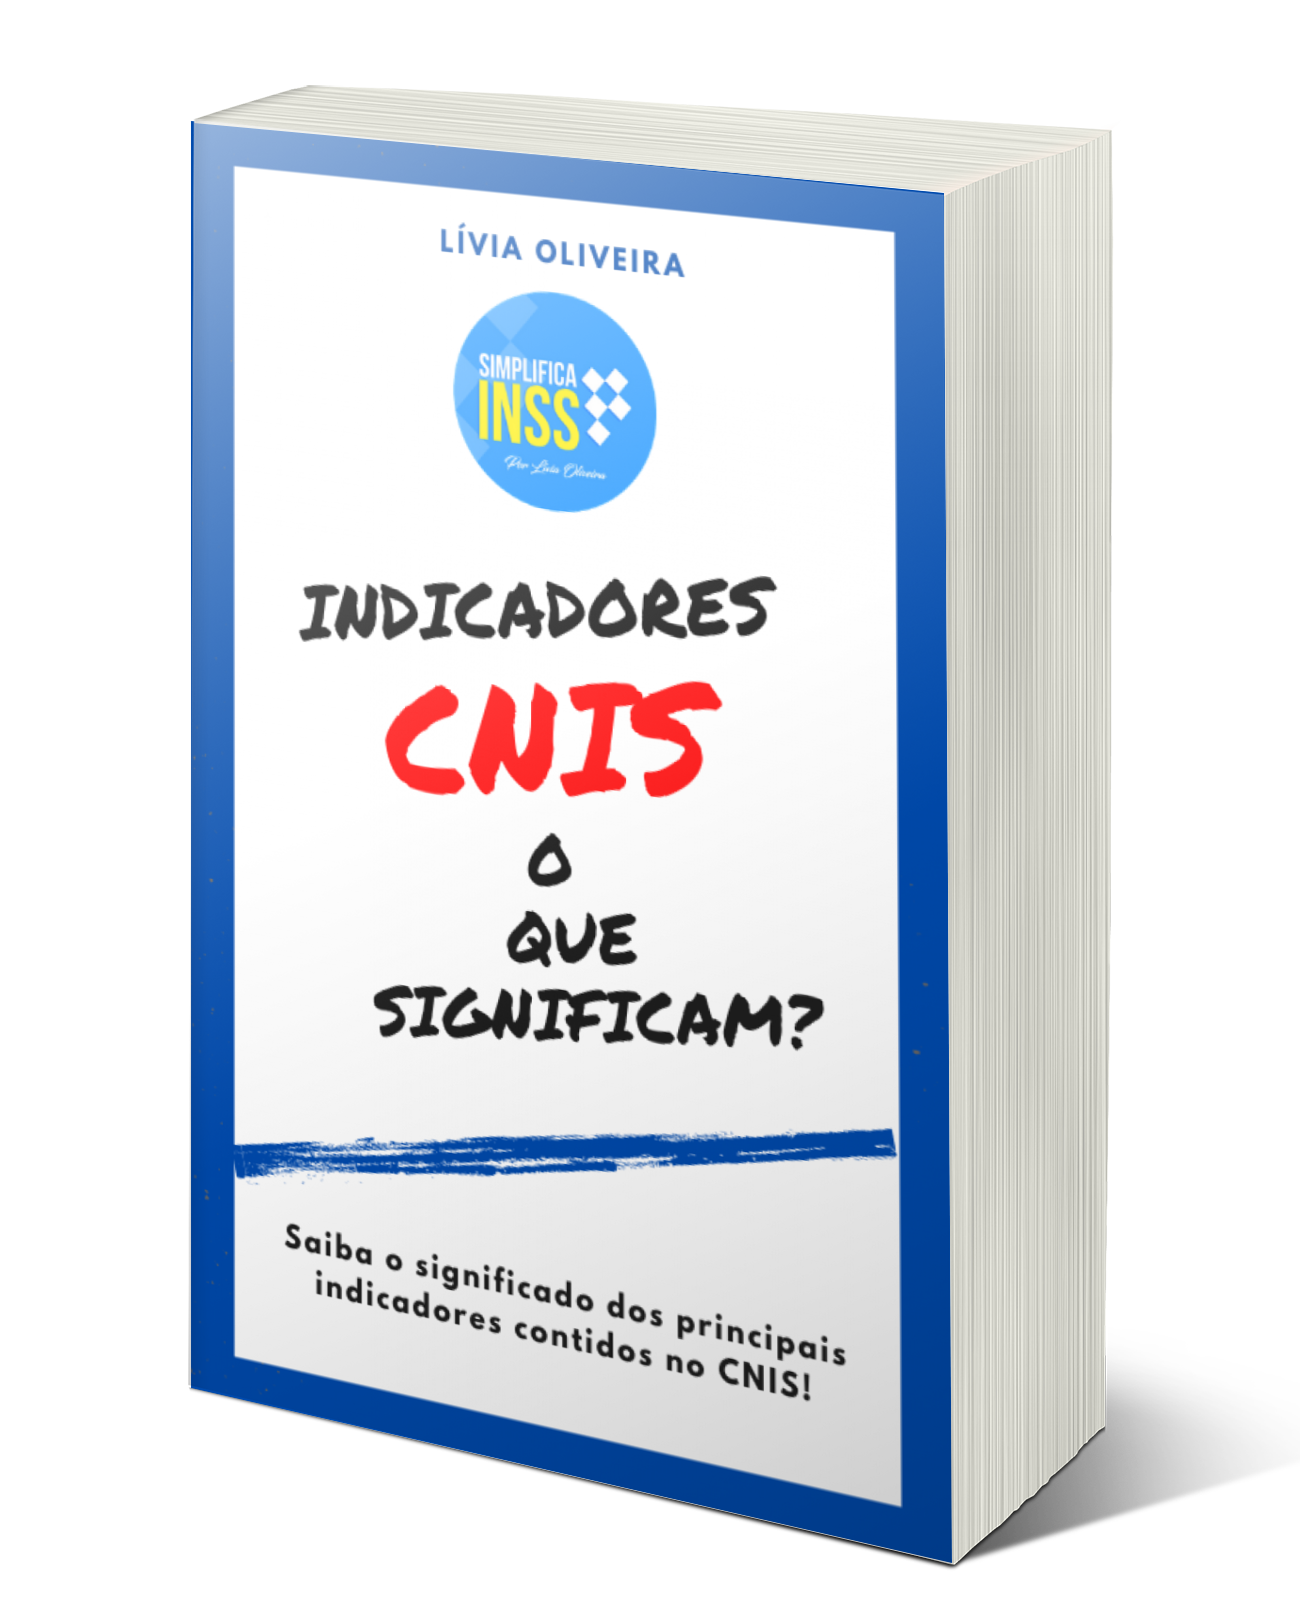 Ebook Indicadores CNIS